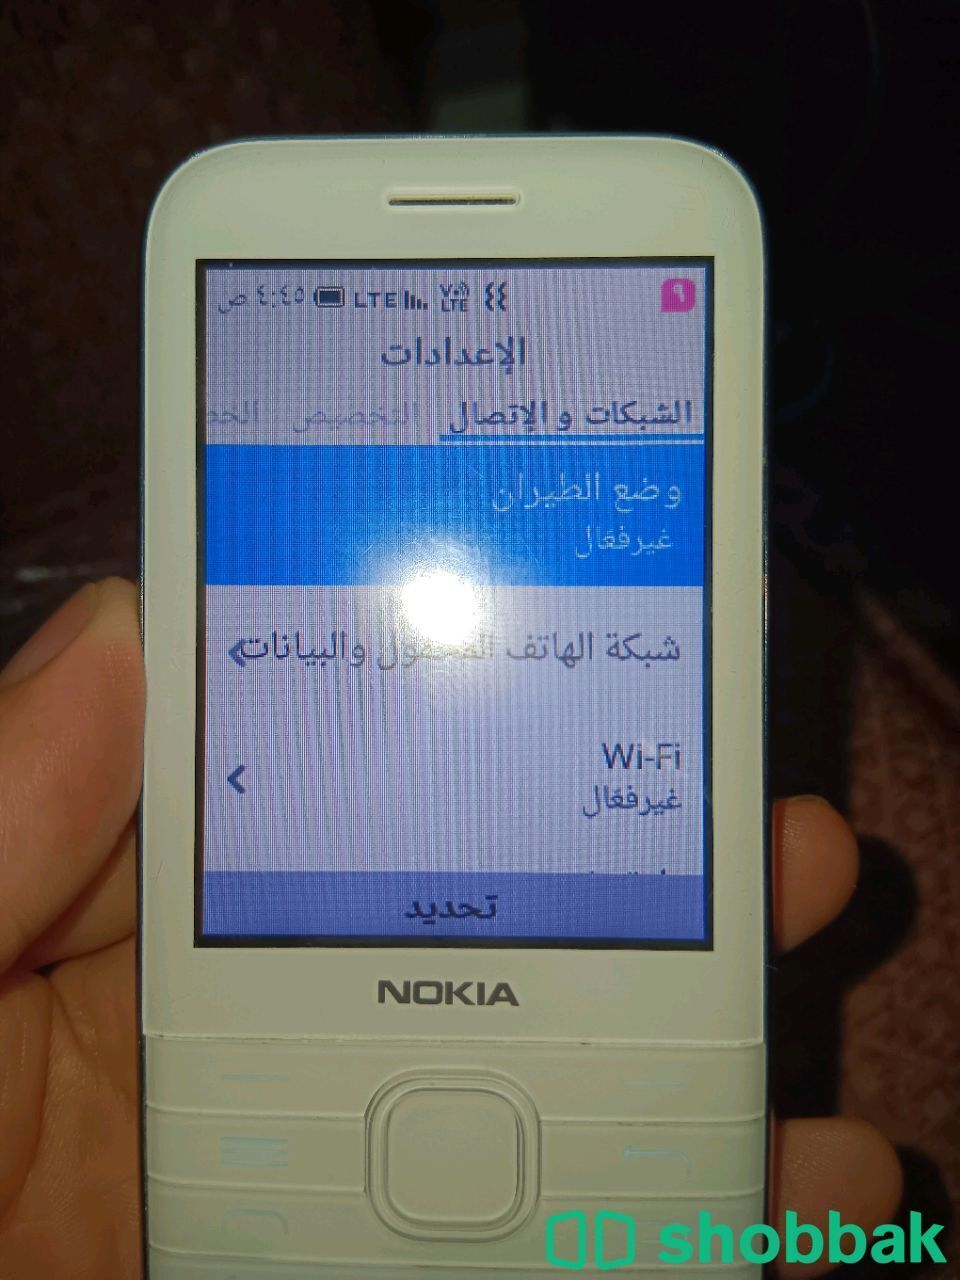 Nokia 8000 4G Shobbak Saudi Arabia